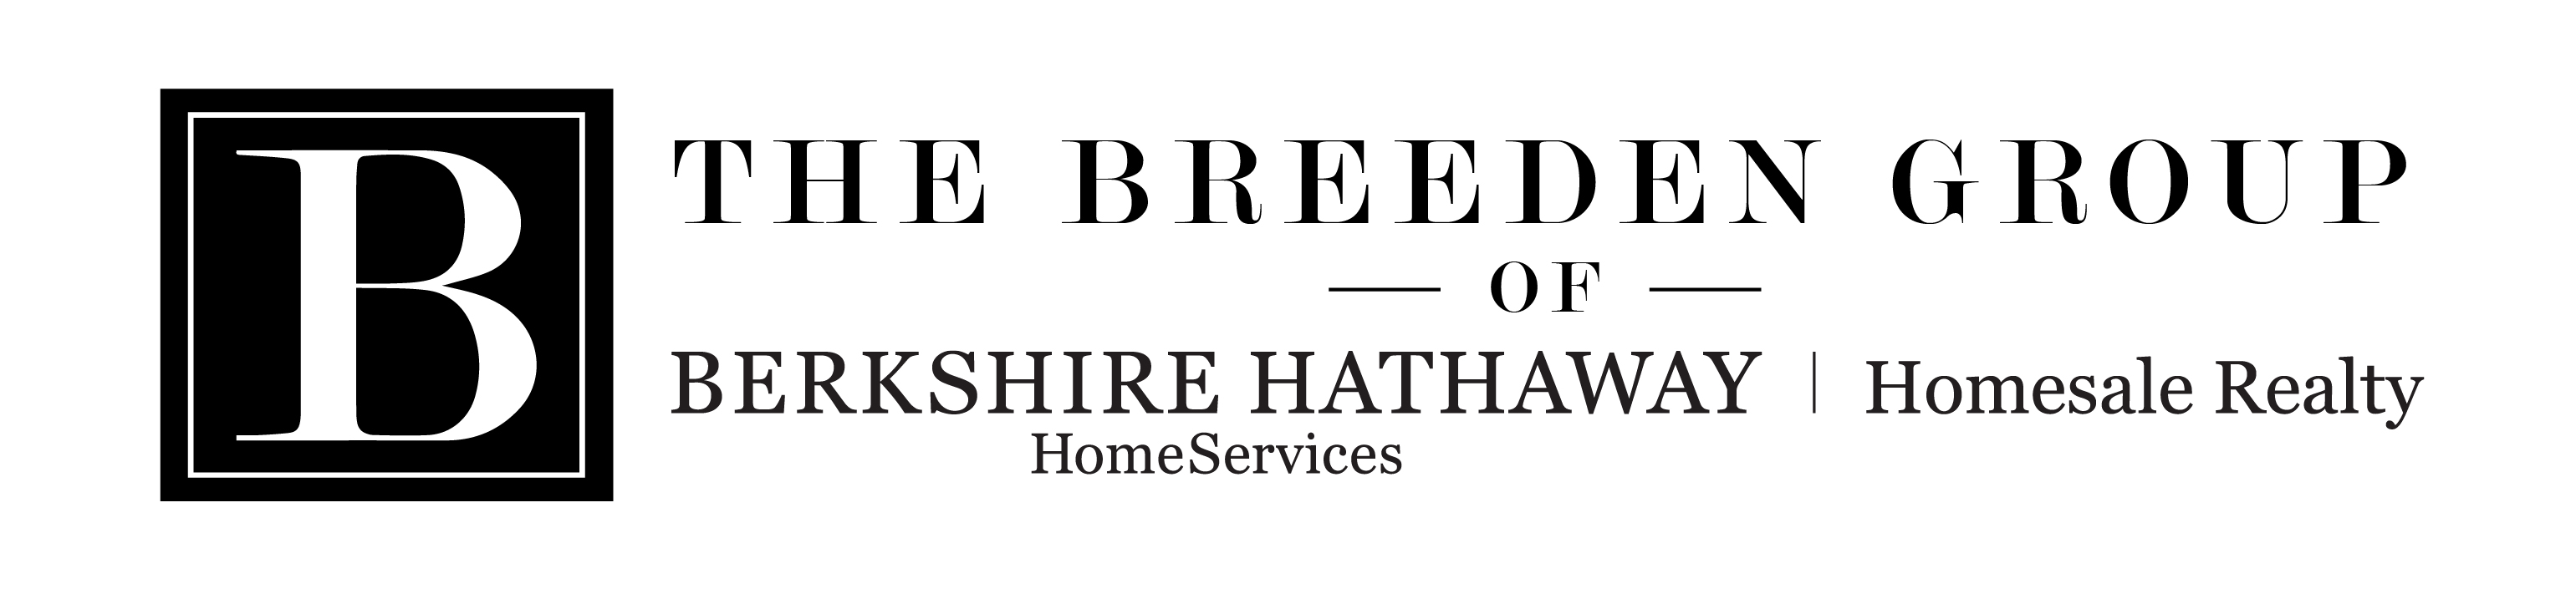 The Breeden Group Of Berkshire Hathaway